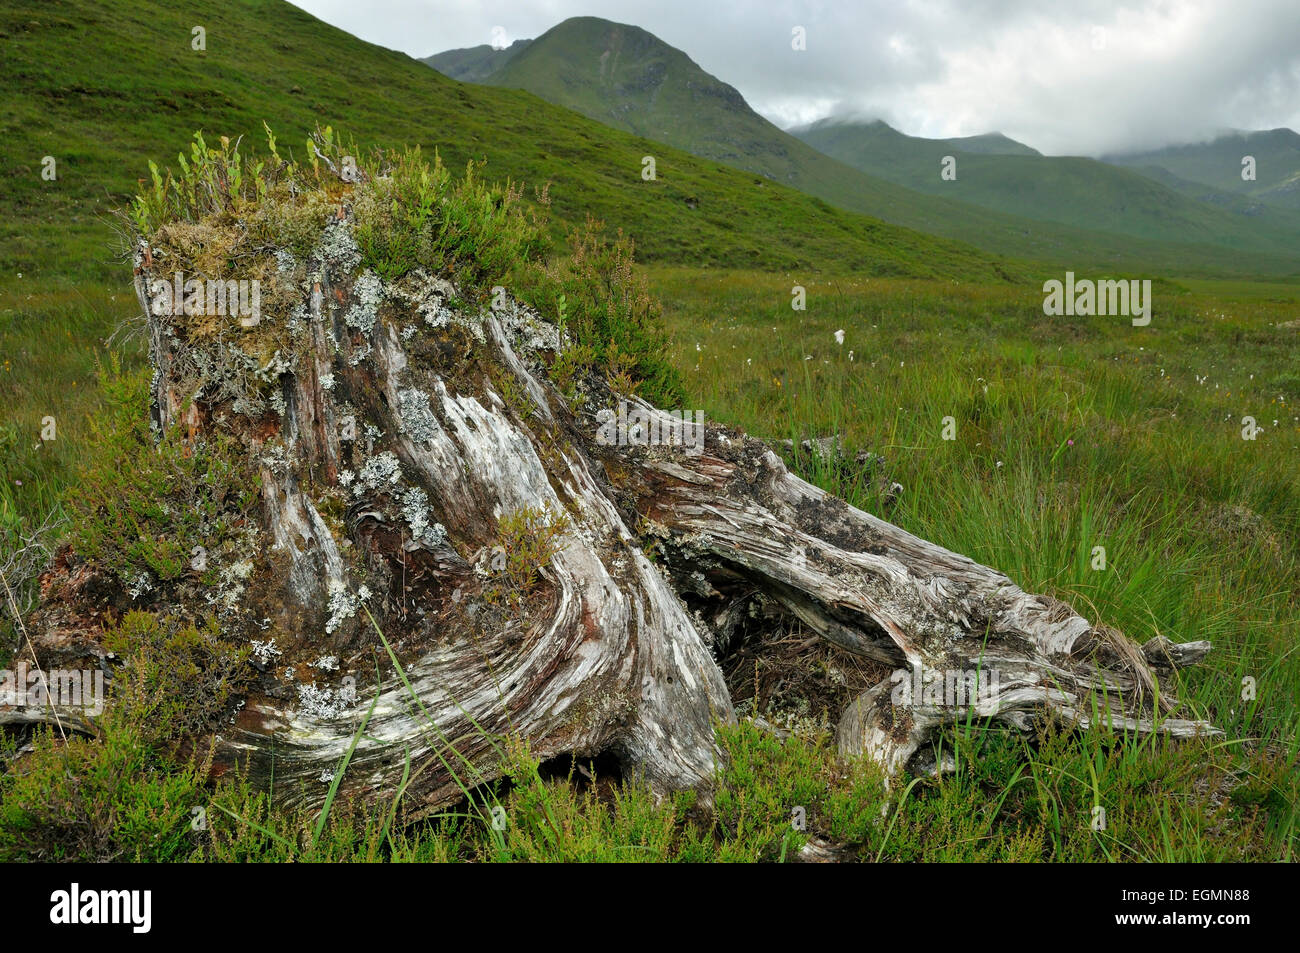 Old tree Stump in Glen Shiel, Scotland Stock Photo